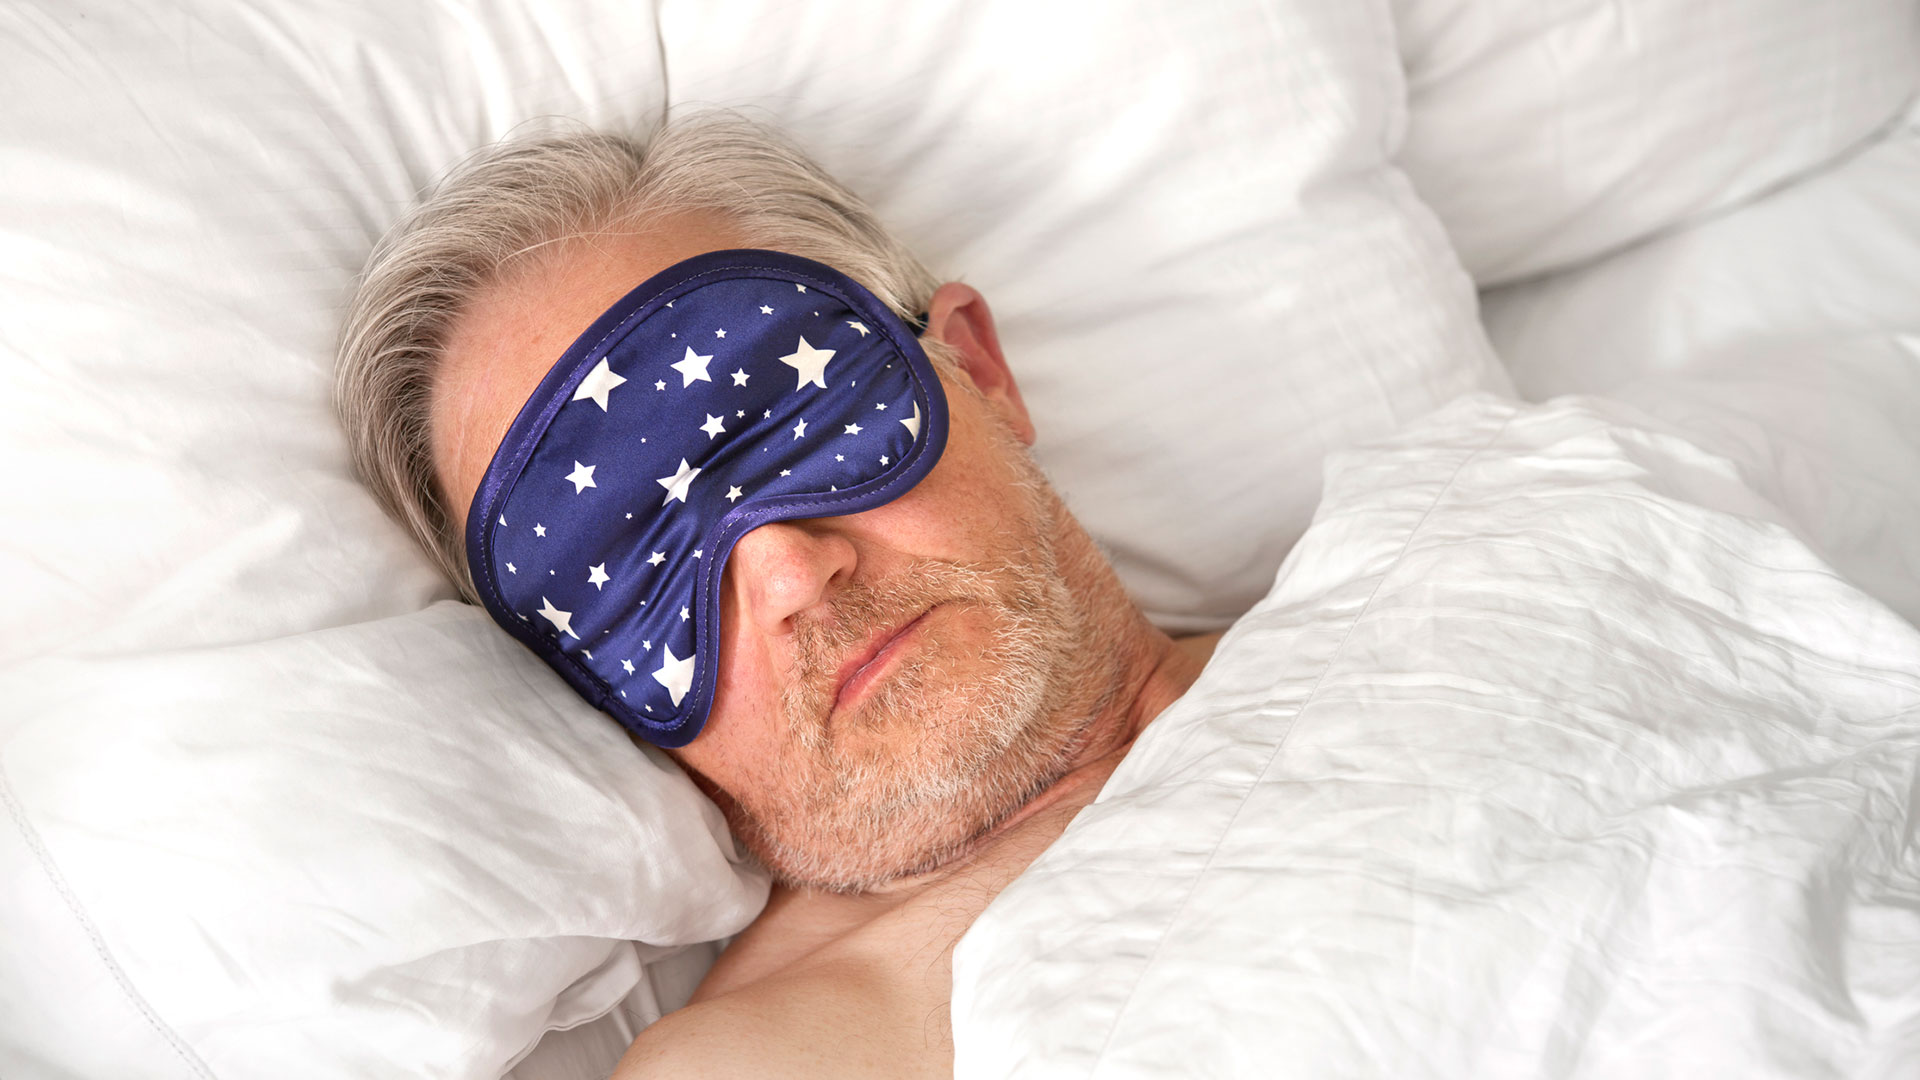 Además de las consecuencias negativas para la salud de dormir mal, las apneas aumentan el riesgo de accidentes viales al causar somnolencia fruto del mal descanso (Getty)